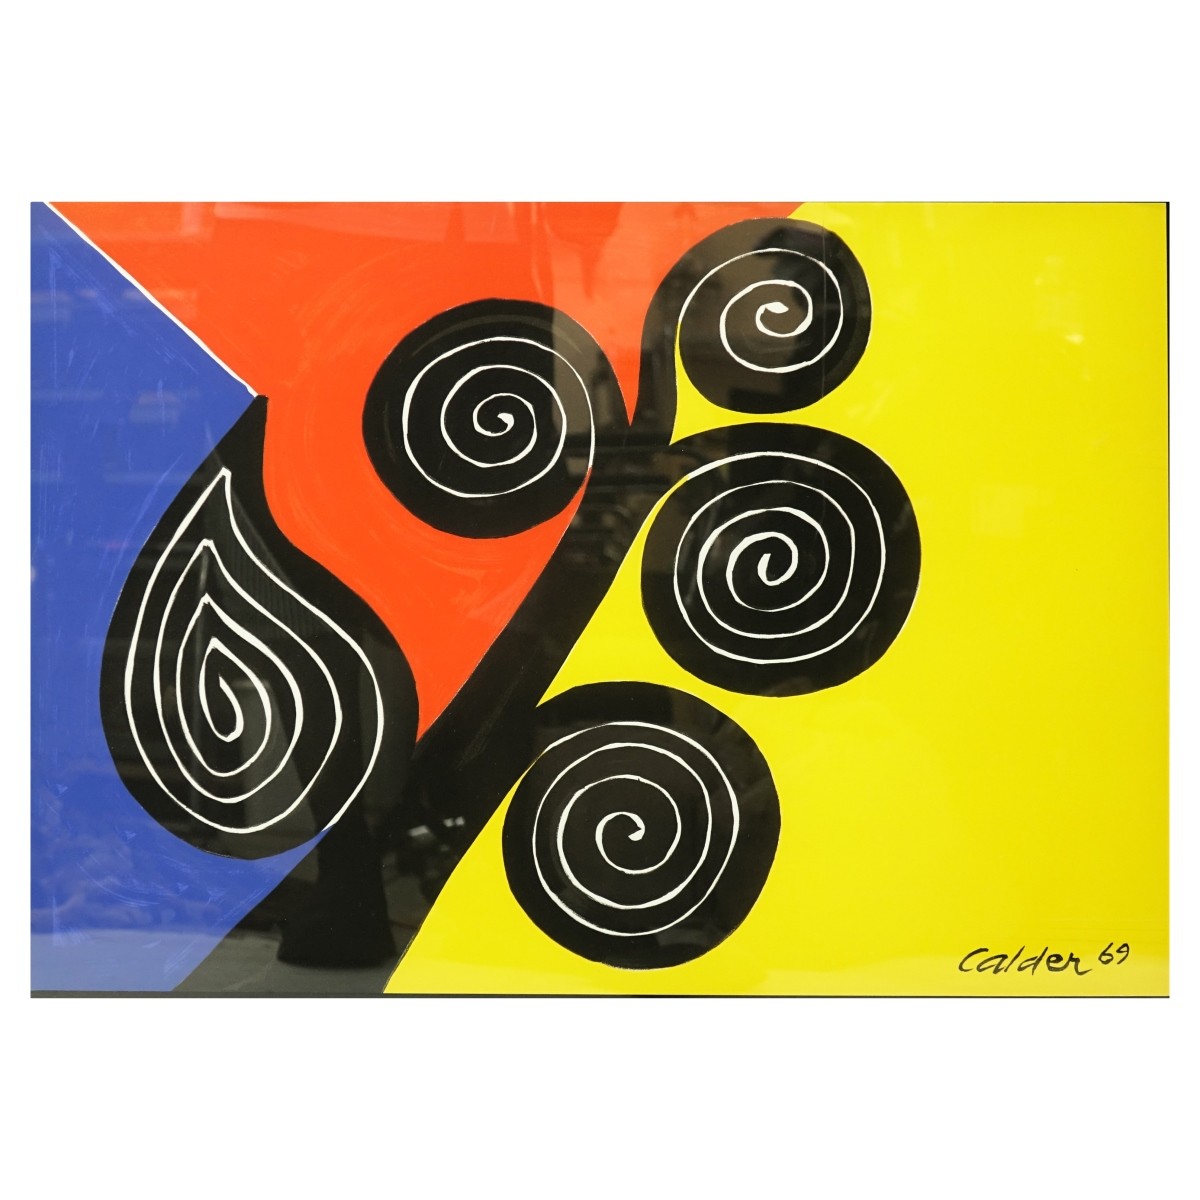 After: Alexander Calder (1898 - 1976) Print